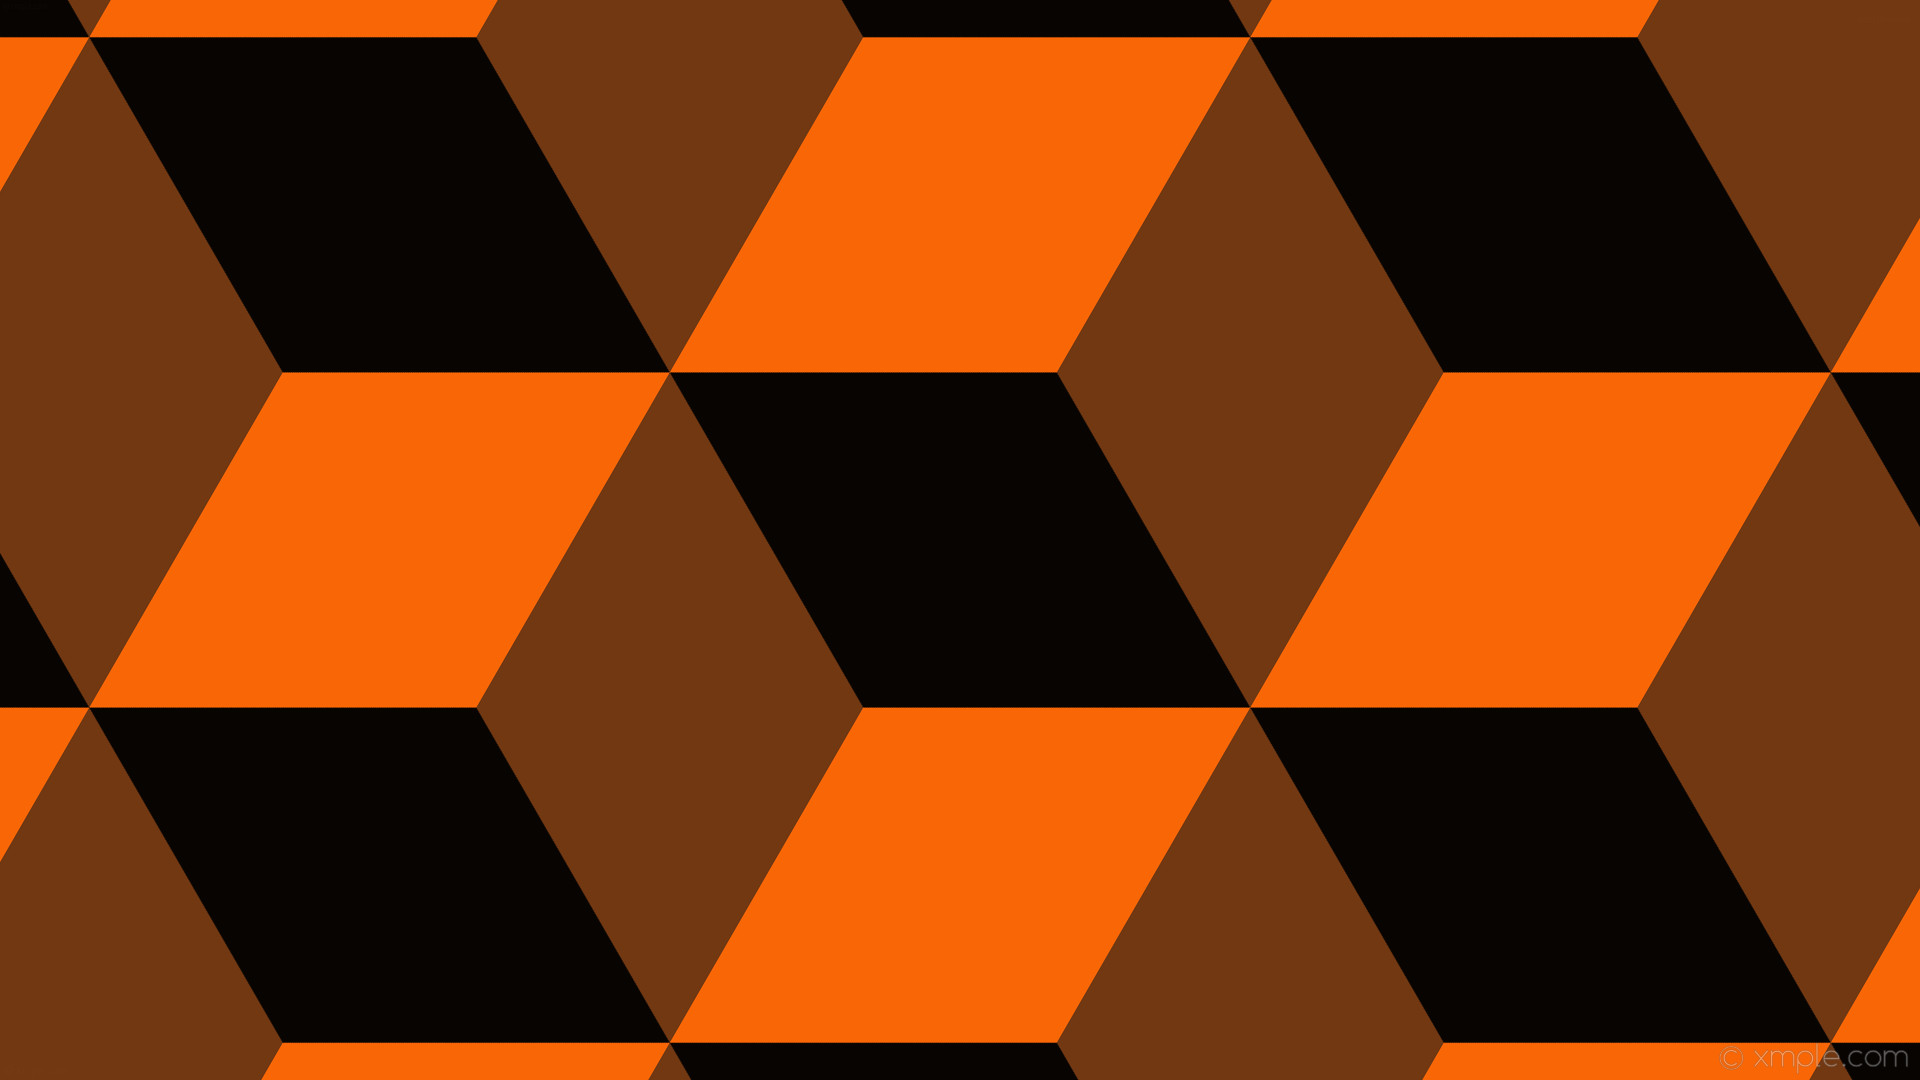 1920x1080 wallpaper orange 3d cubes black #070402 #723812 #f96606 330Â° 387px